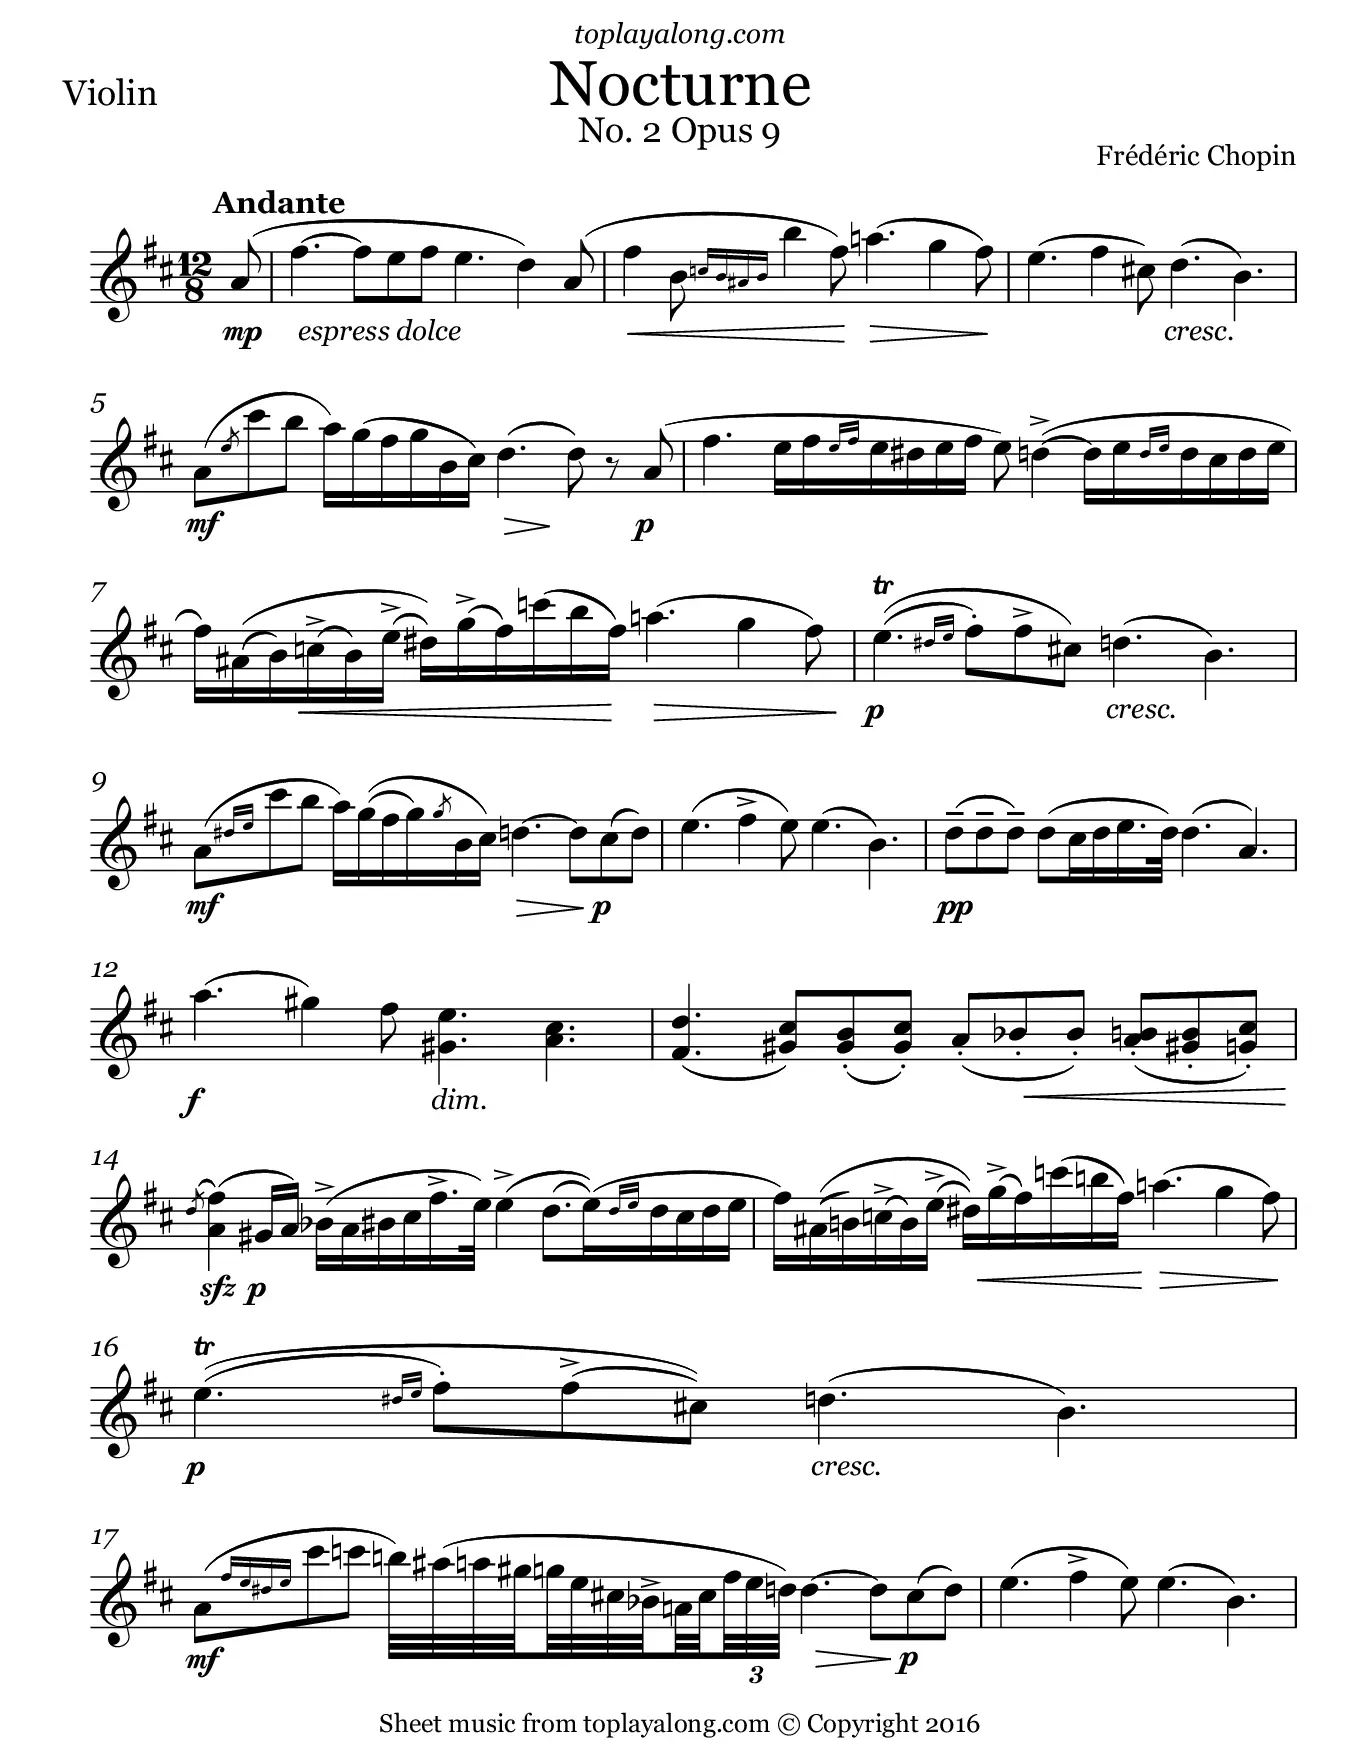 nocturno para violin - Qué significa Op 9 N 2